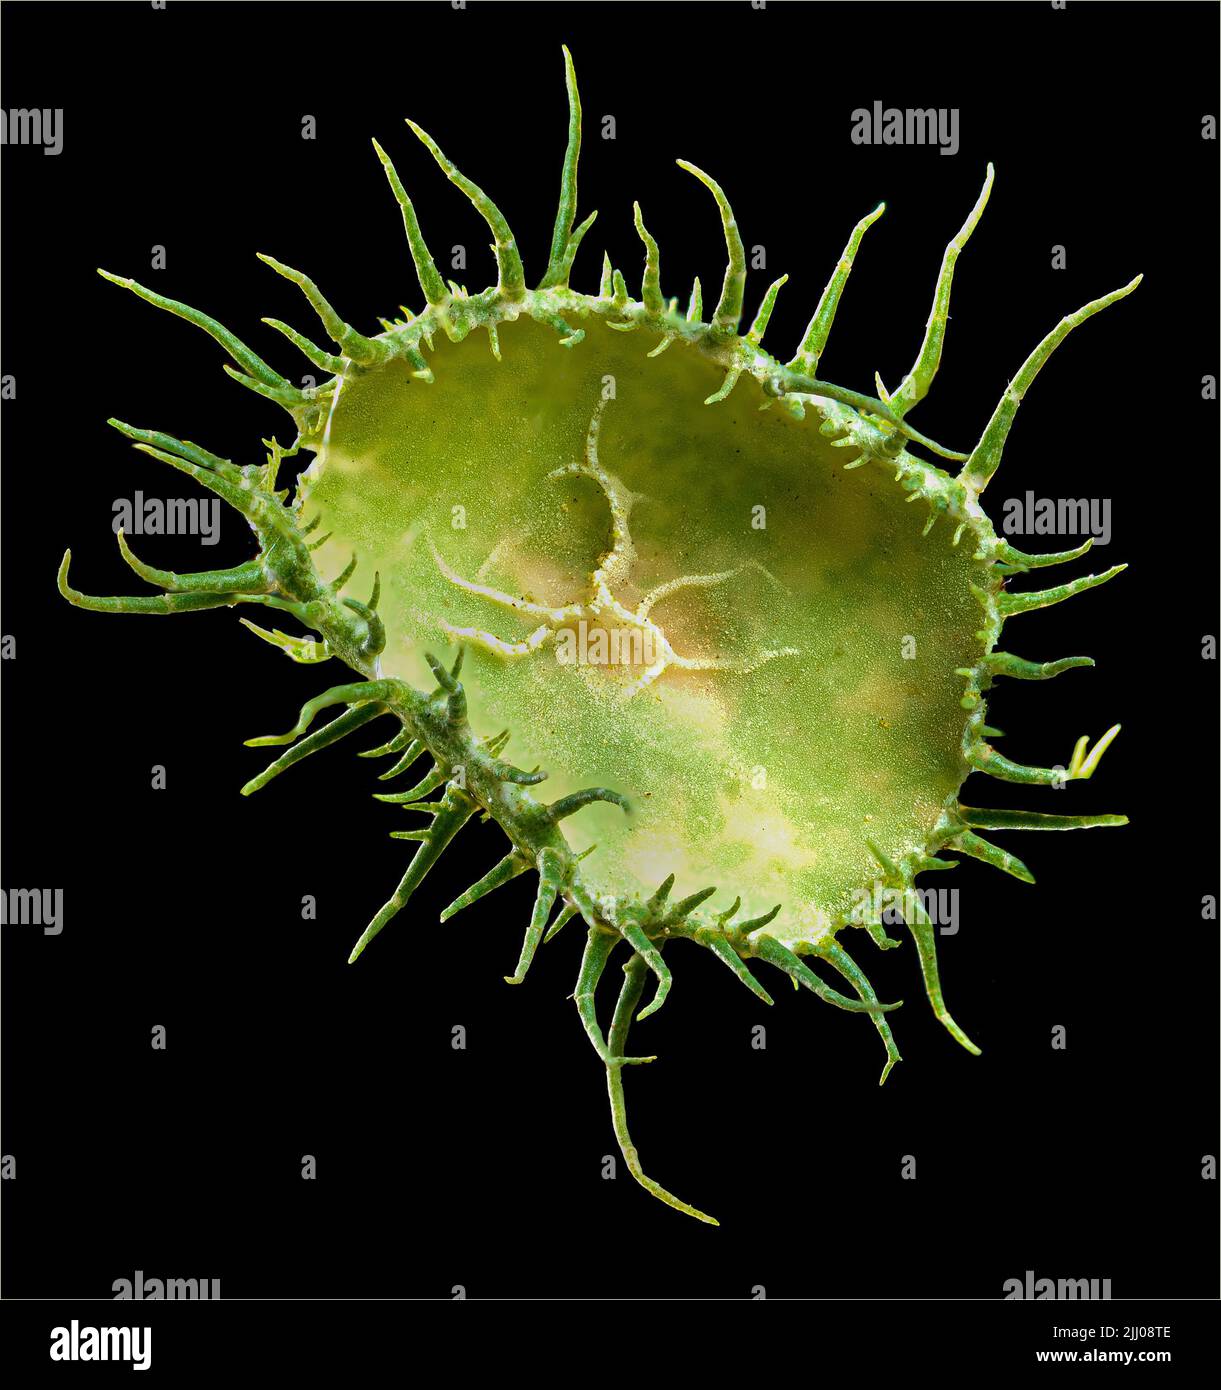 Macro view of fruiting body (apothecia) of beard lichen (Usnea sp.) Stock Photo